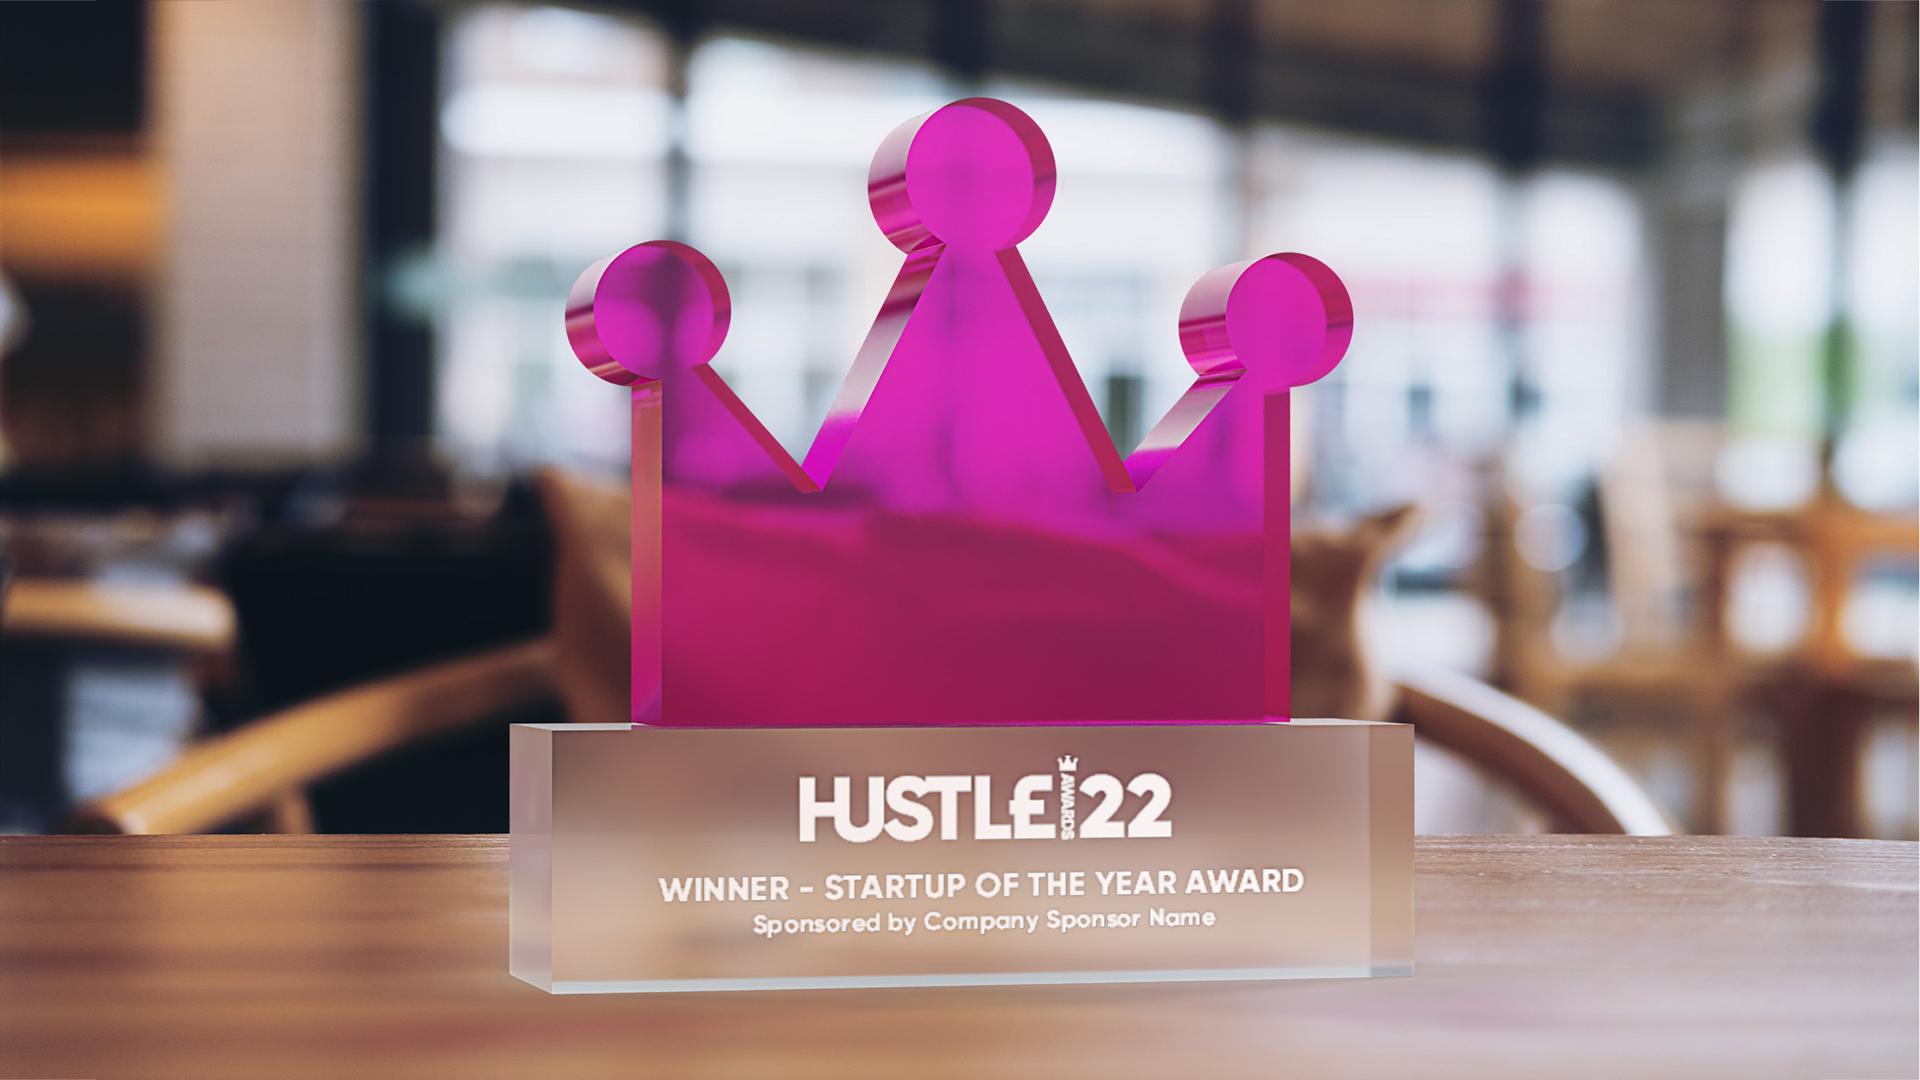 Awards trophy image - Hustle Awards